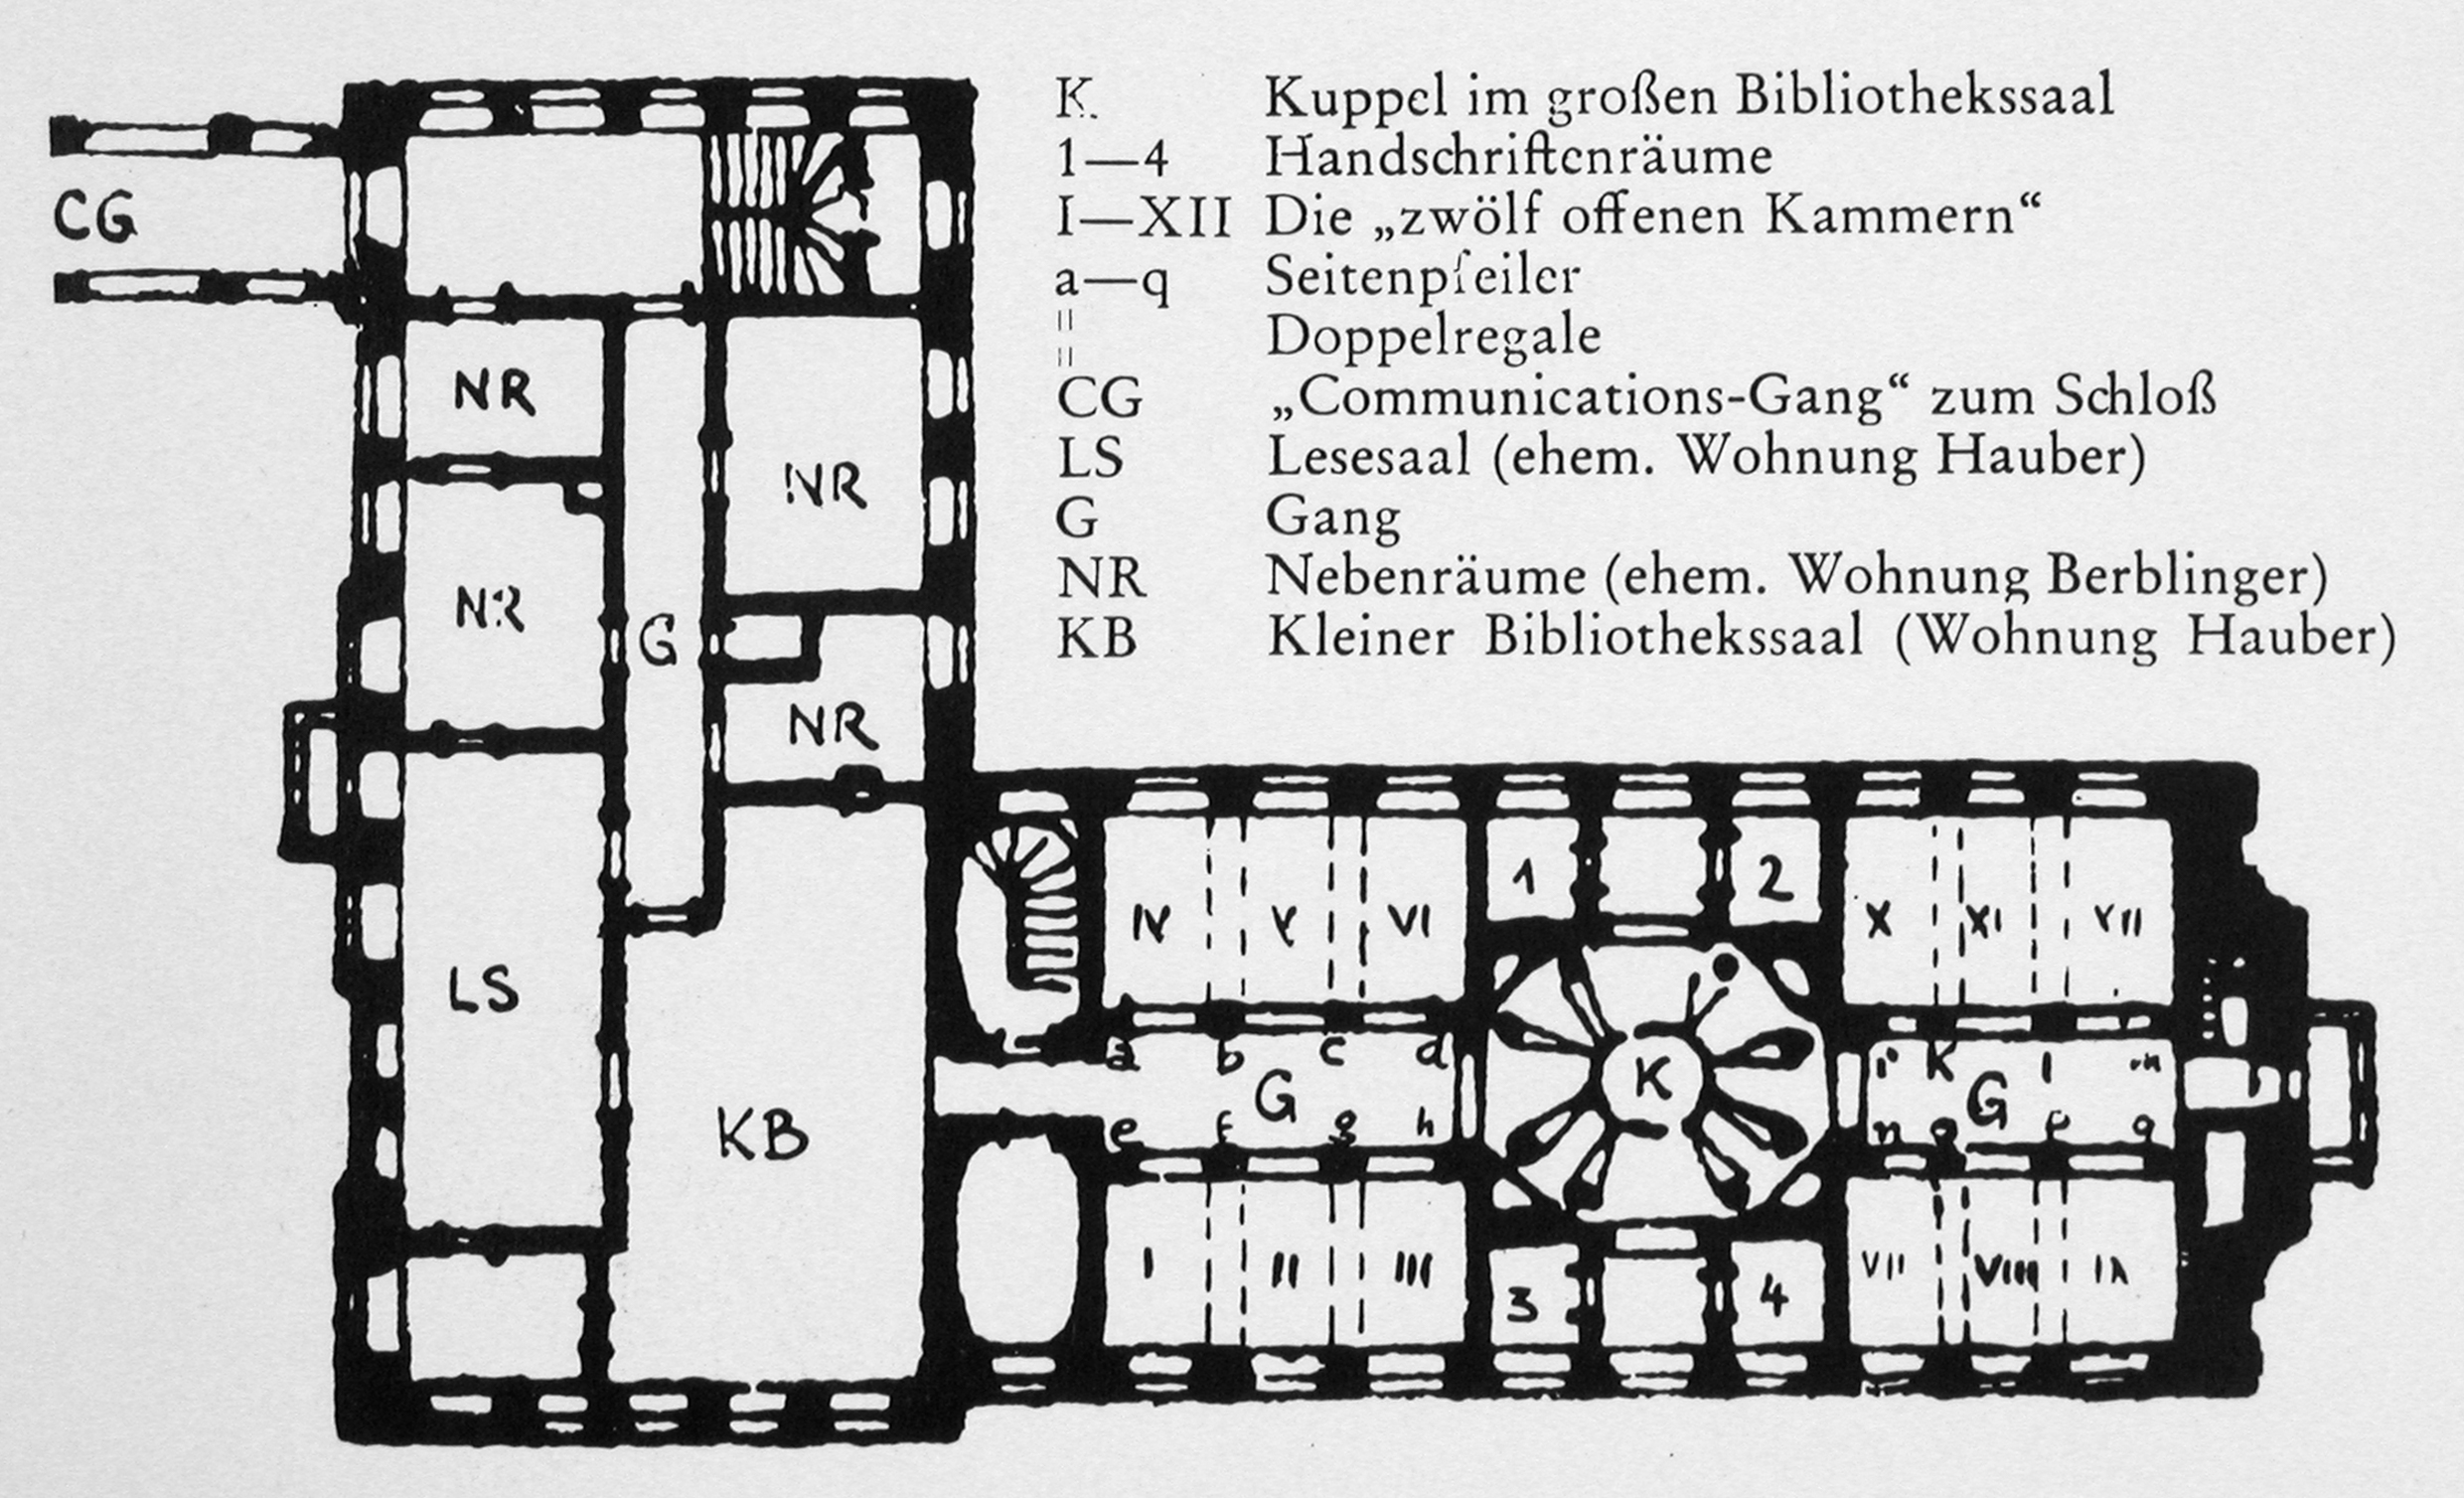  Grundriss der Hofbibliothek im Obergeschoss des Schloss-Nebengebäudes. Die Räume sind mit Buchstaben abgekürzt. z.B K = Kuppel, CG = "Communications-Gang" zum Schloss und zwölf römische Zhalen für die "zwölf offenen Kammern"